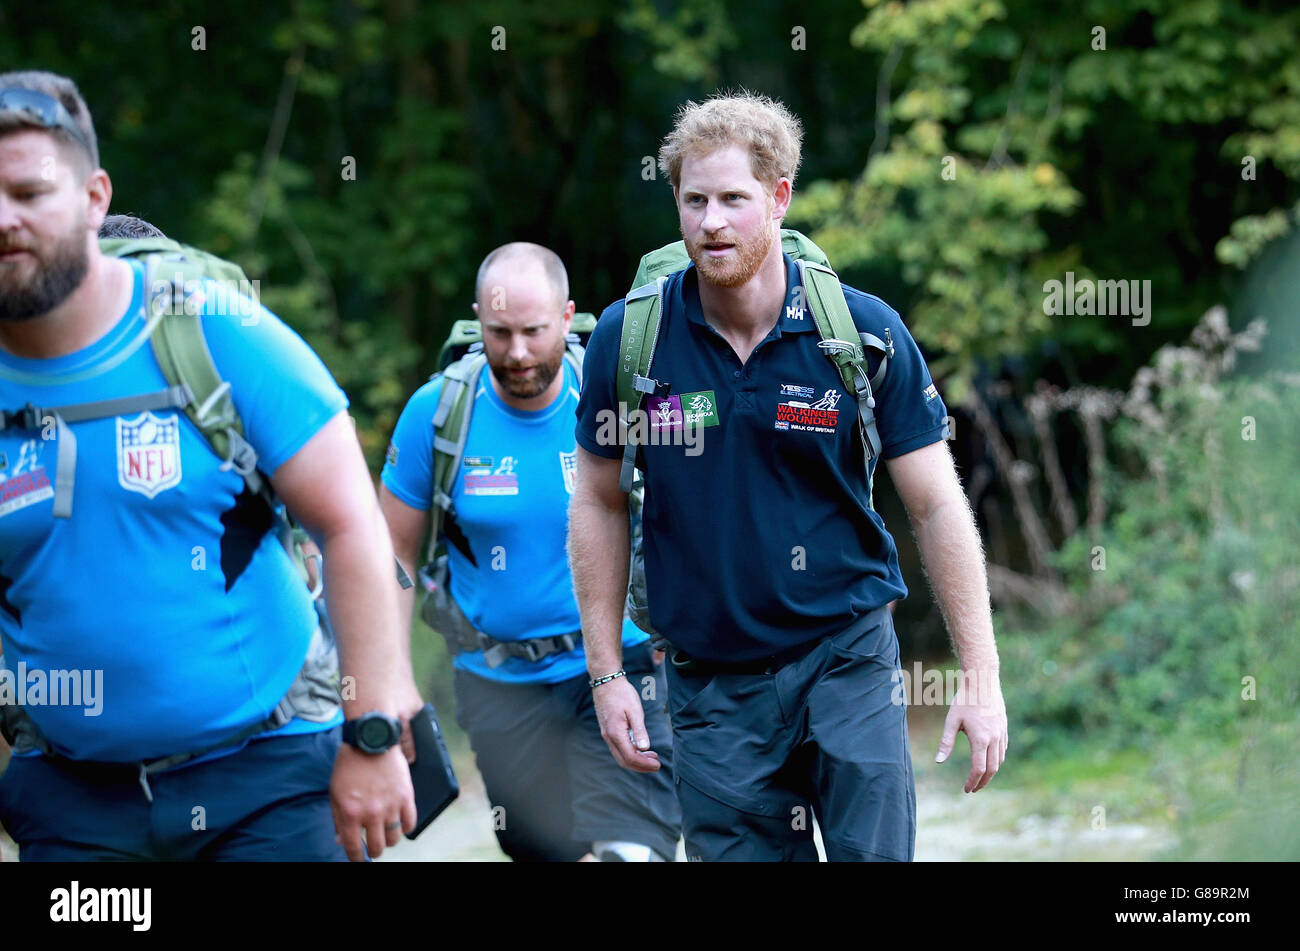 Le prince Harry rejoint la marche avec l'équipe de marche de Grande-Bretagne des blessés lors de leur marche vers Ludlow à Shrophire alors qu'ils parcourent la longueur du pays sur leurs propres routes personnelles vers la reprise. Banque D'Images